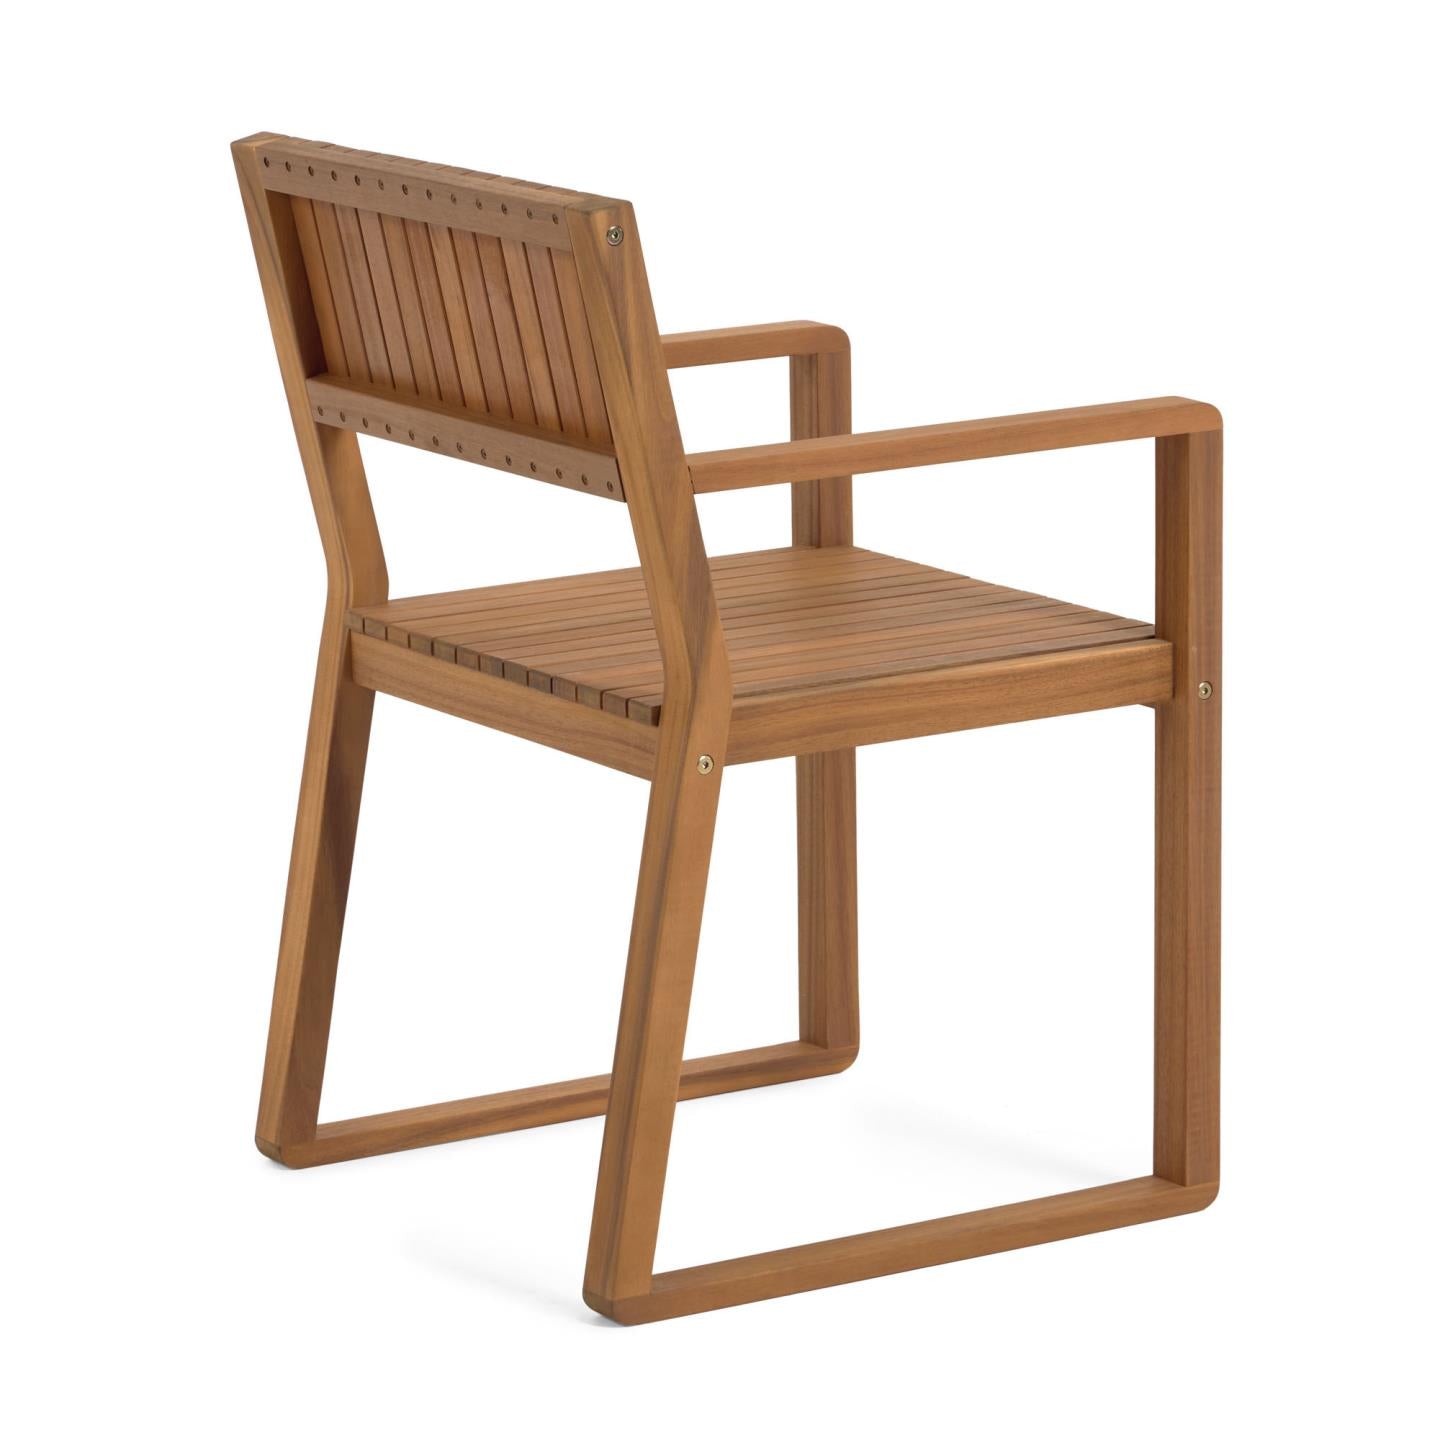 Emili solid 100% FSC acacia garden chair